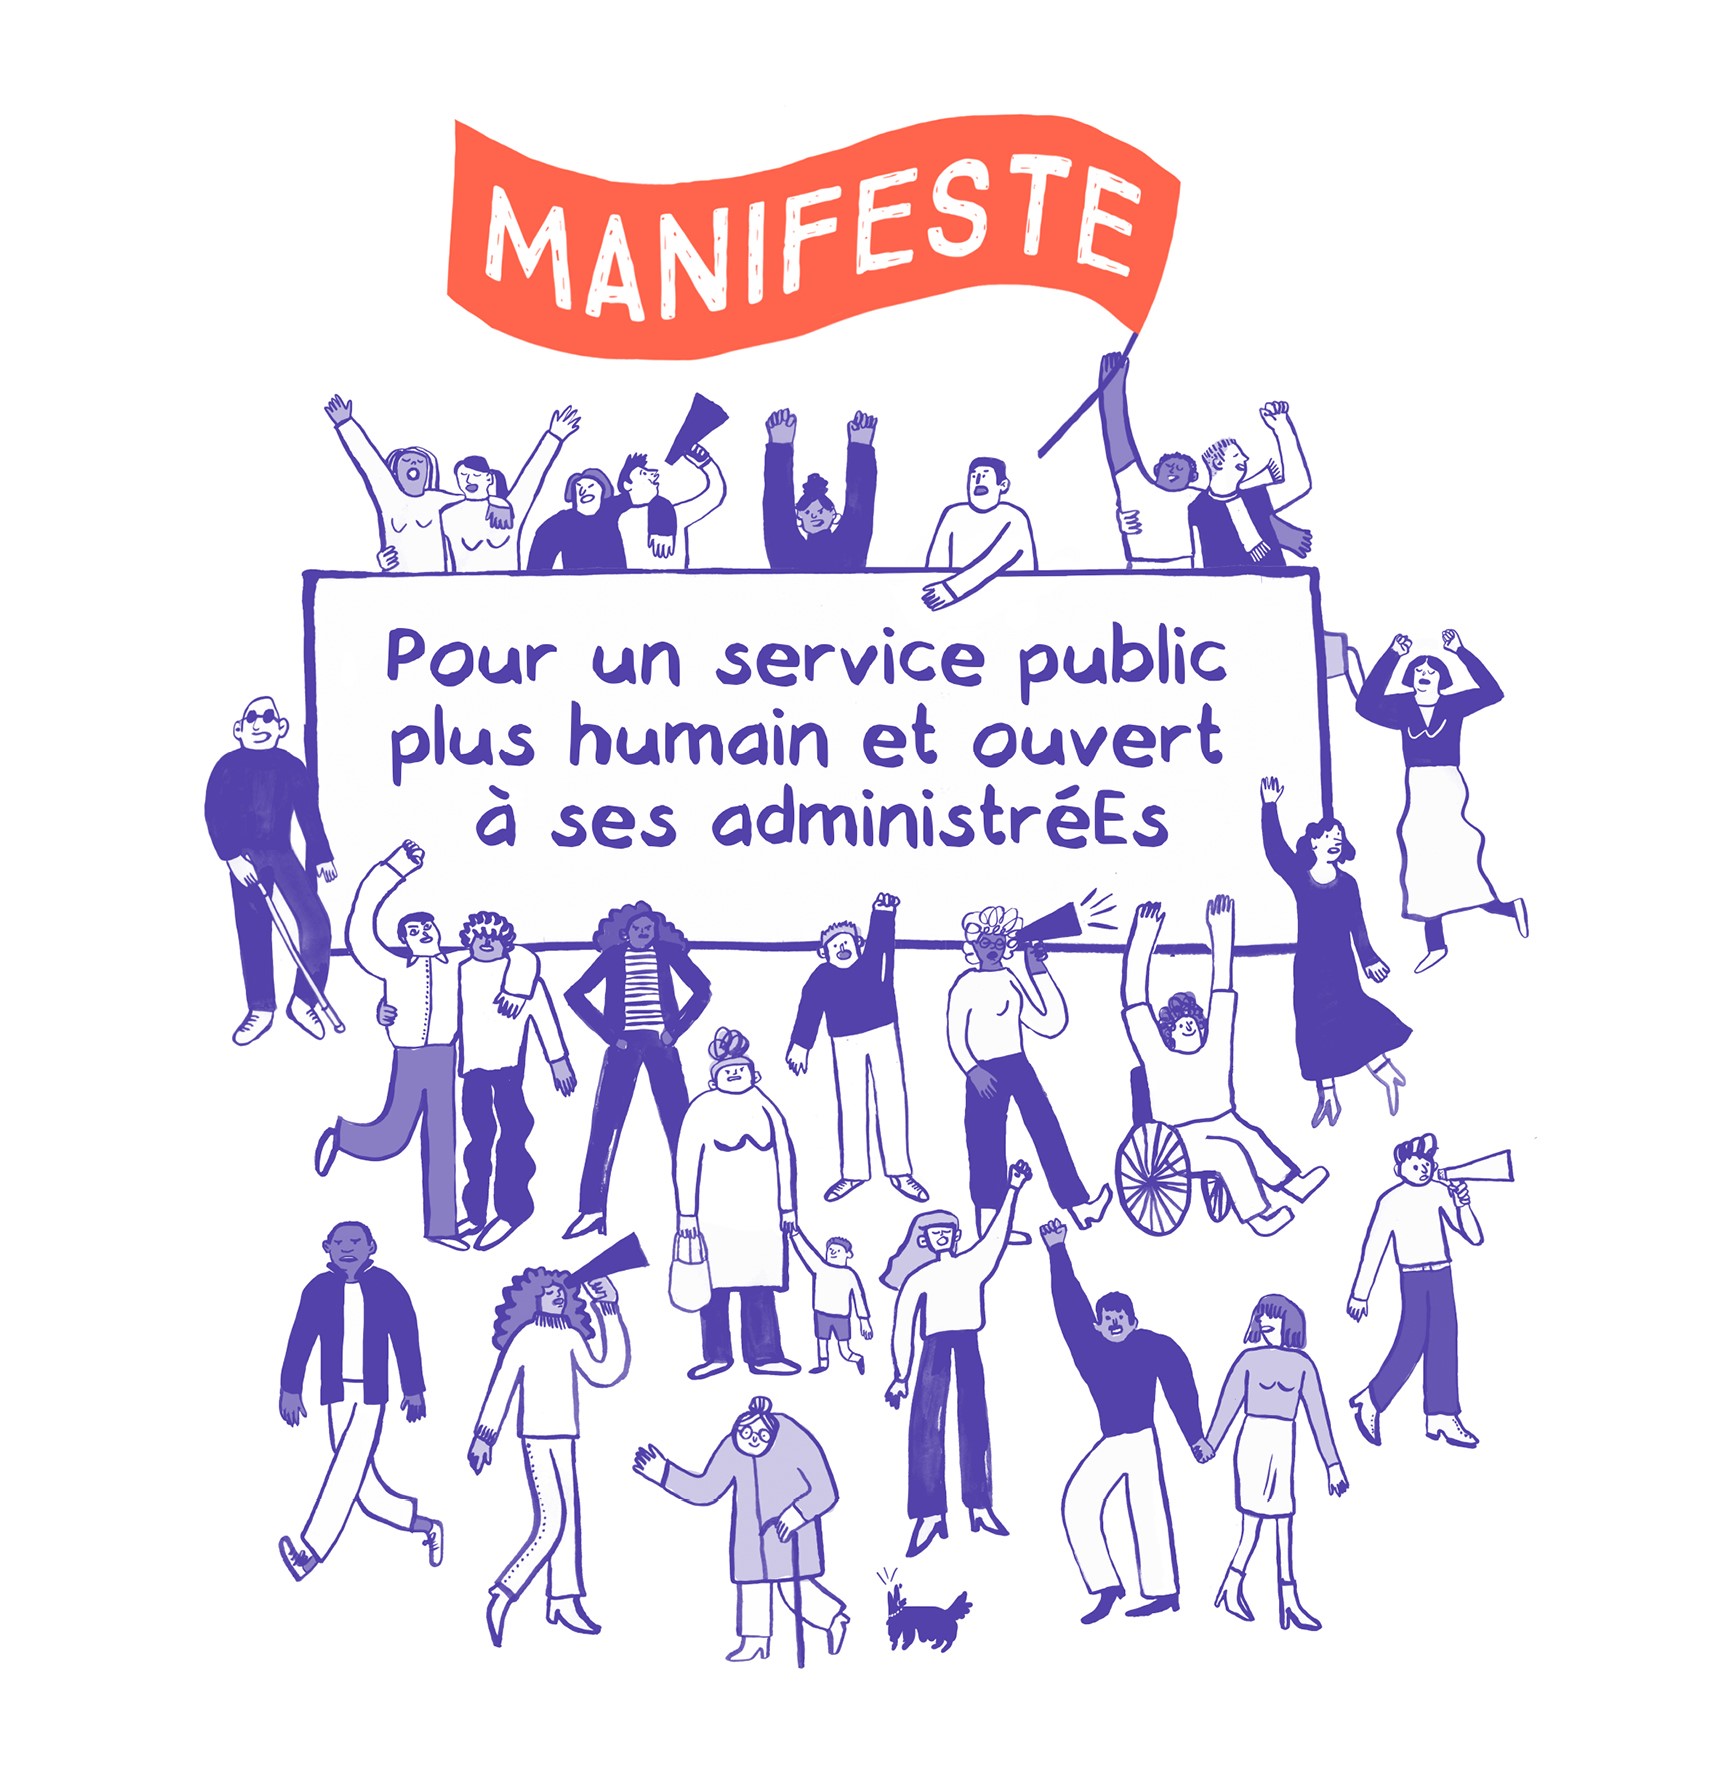 Manifeste : Pour un service public plus humain et ouvert